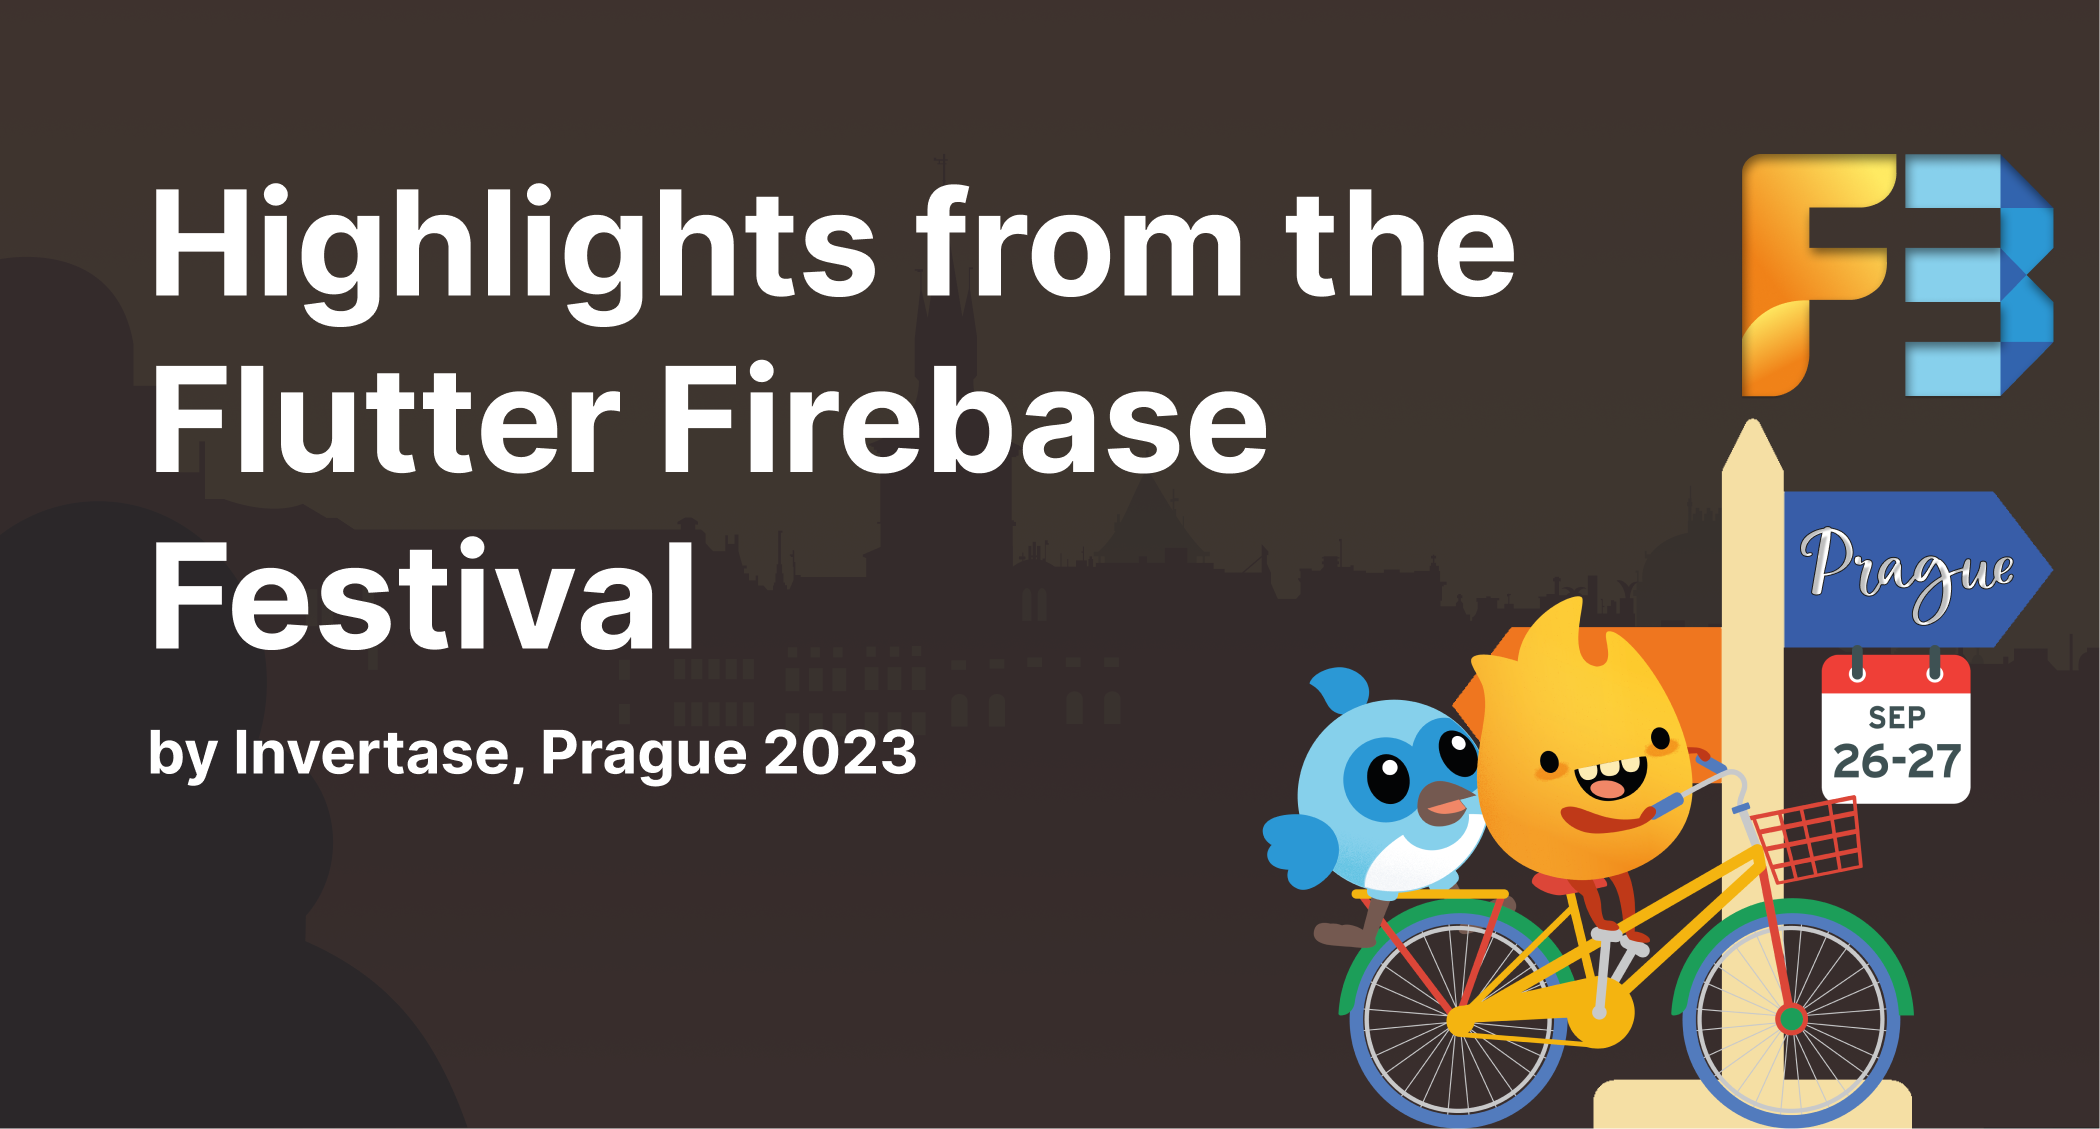 Highlights from the Flutter Firebase Festival